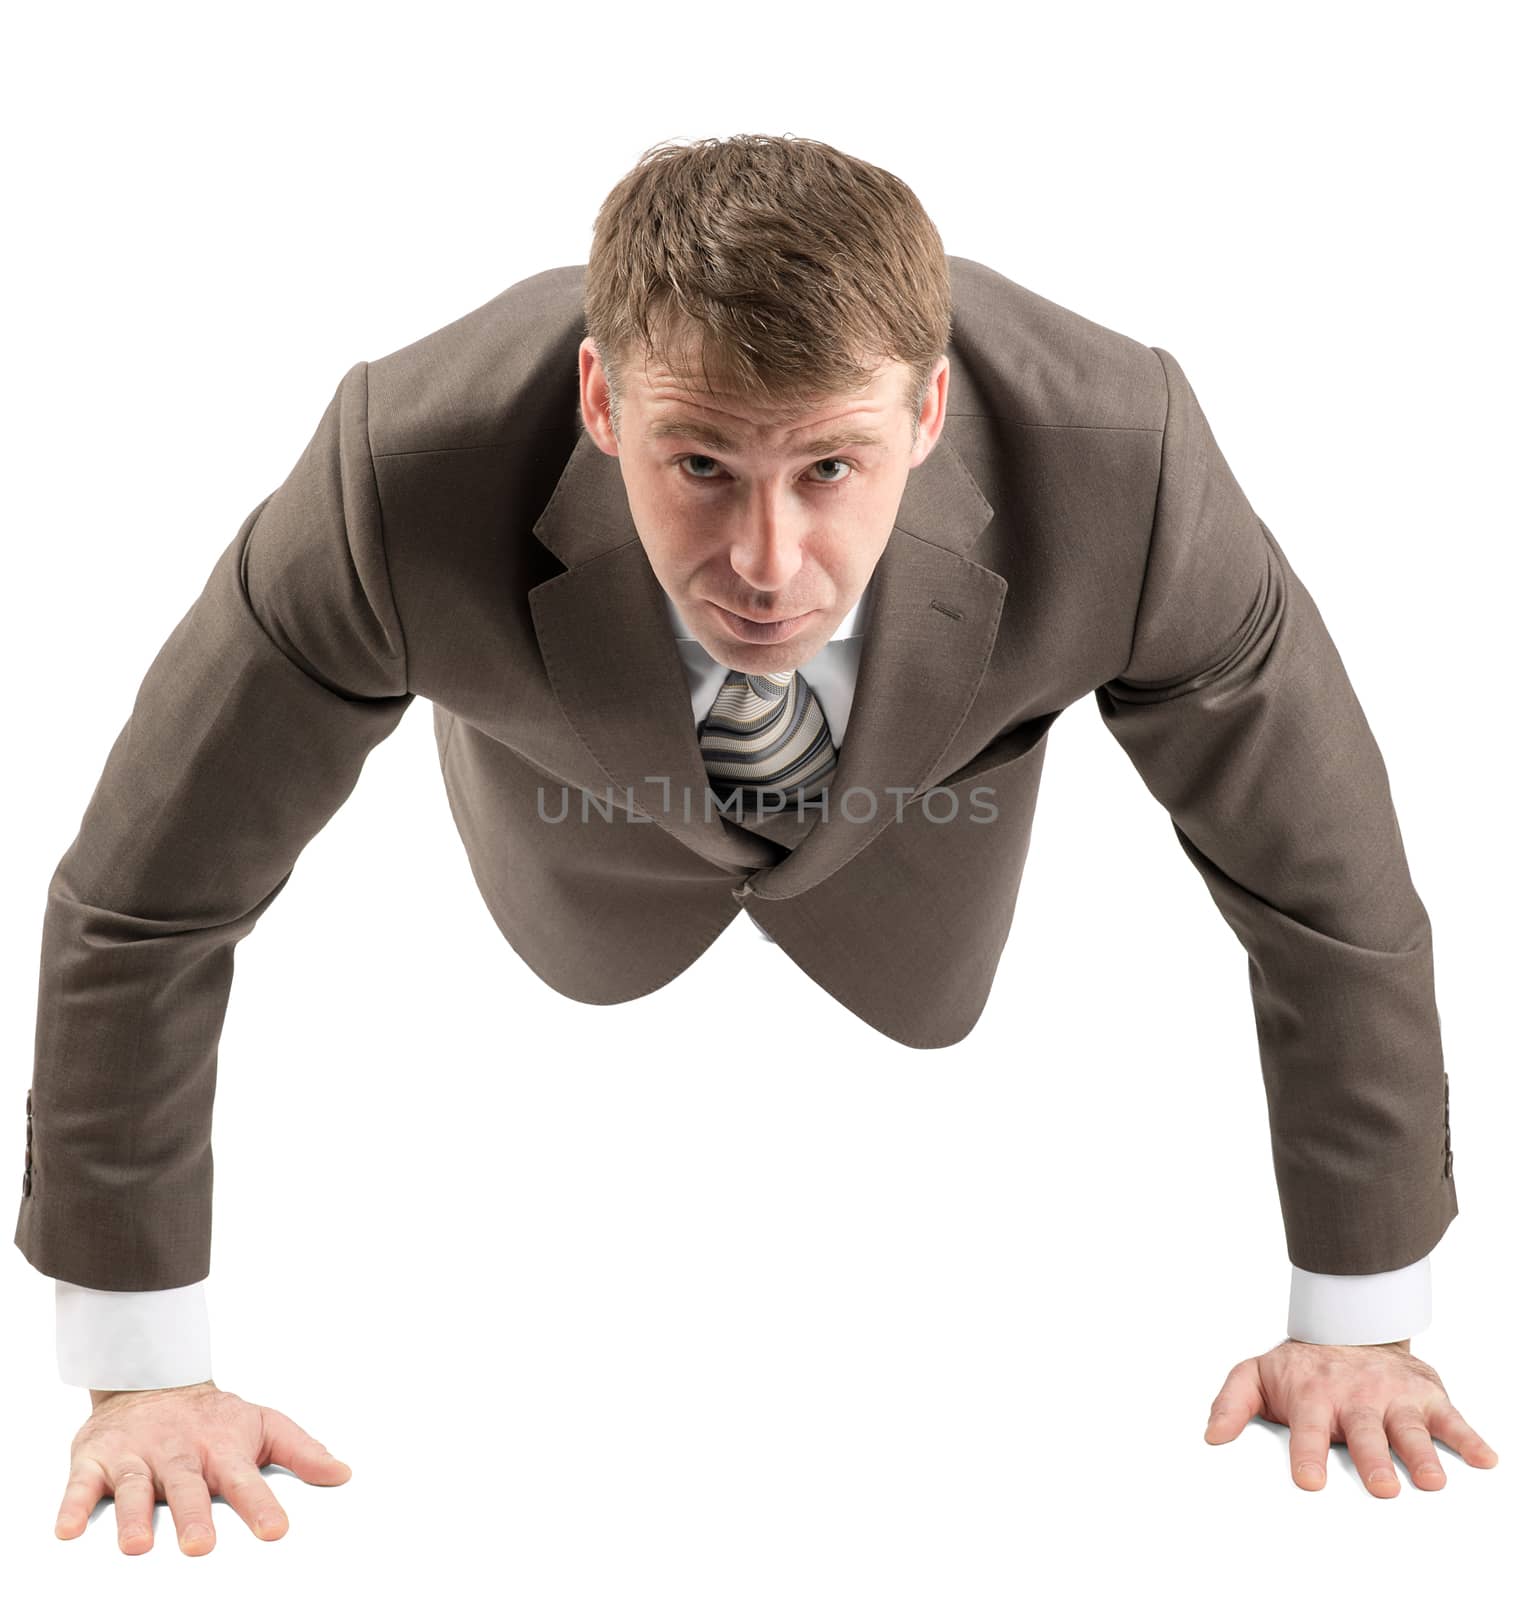 Businessman doing push-ups isolated on white background